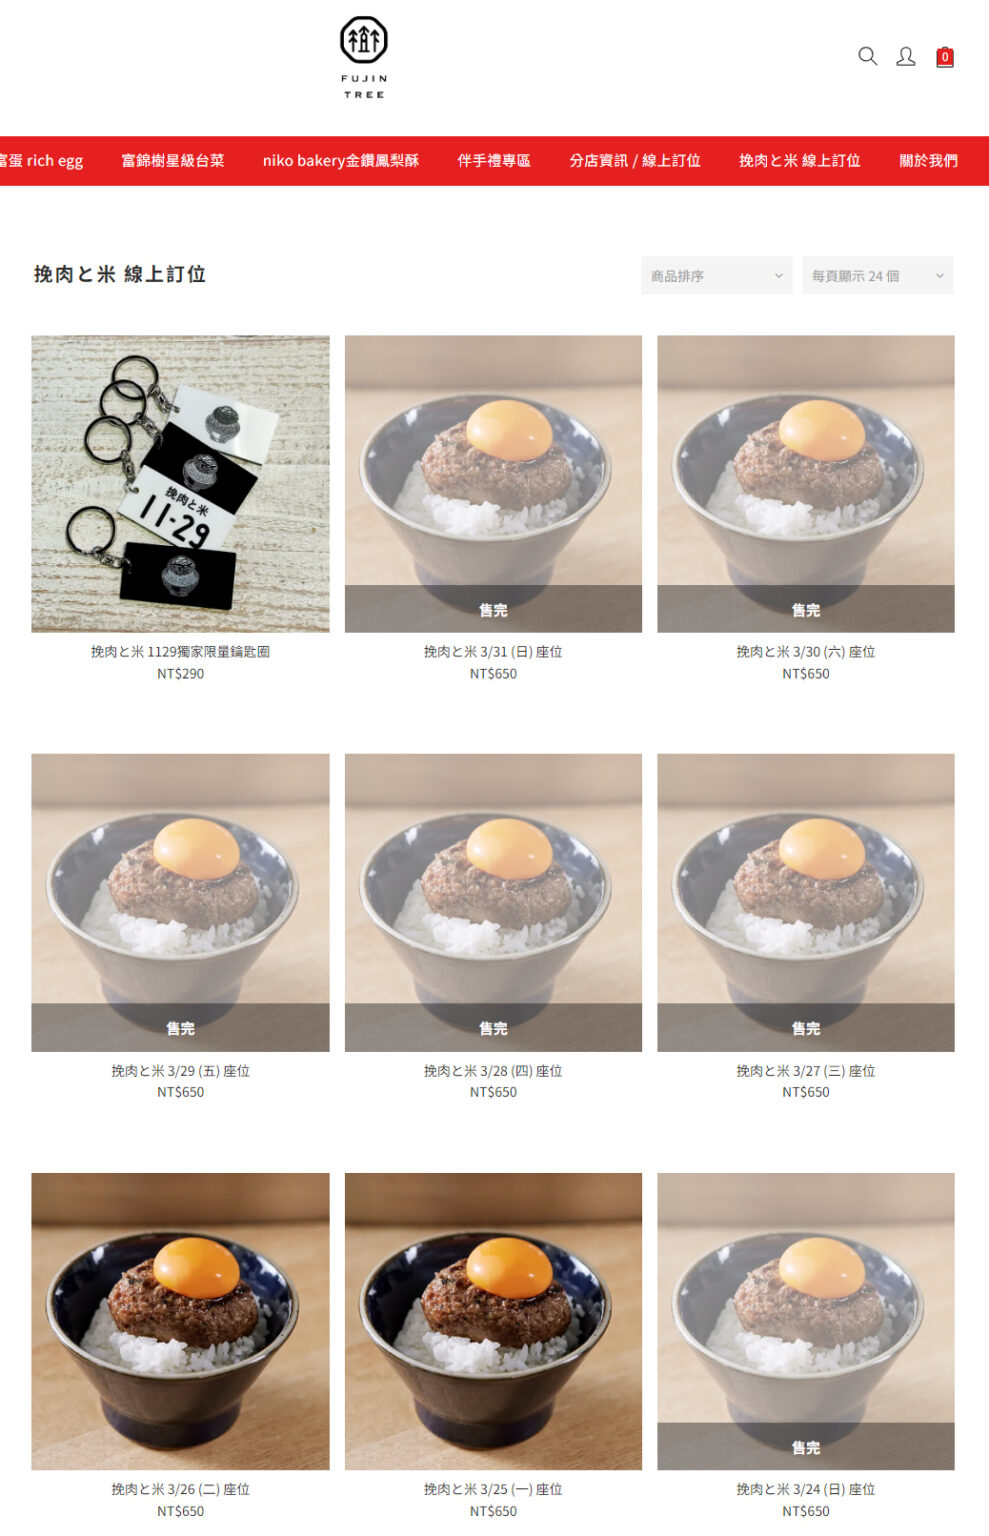 富錦樹挽肉と米訂位網站畫面